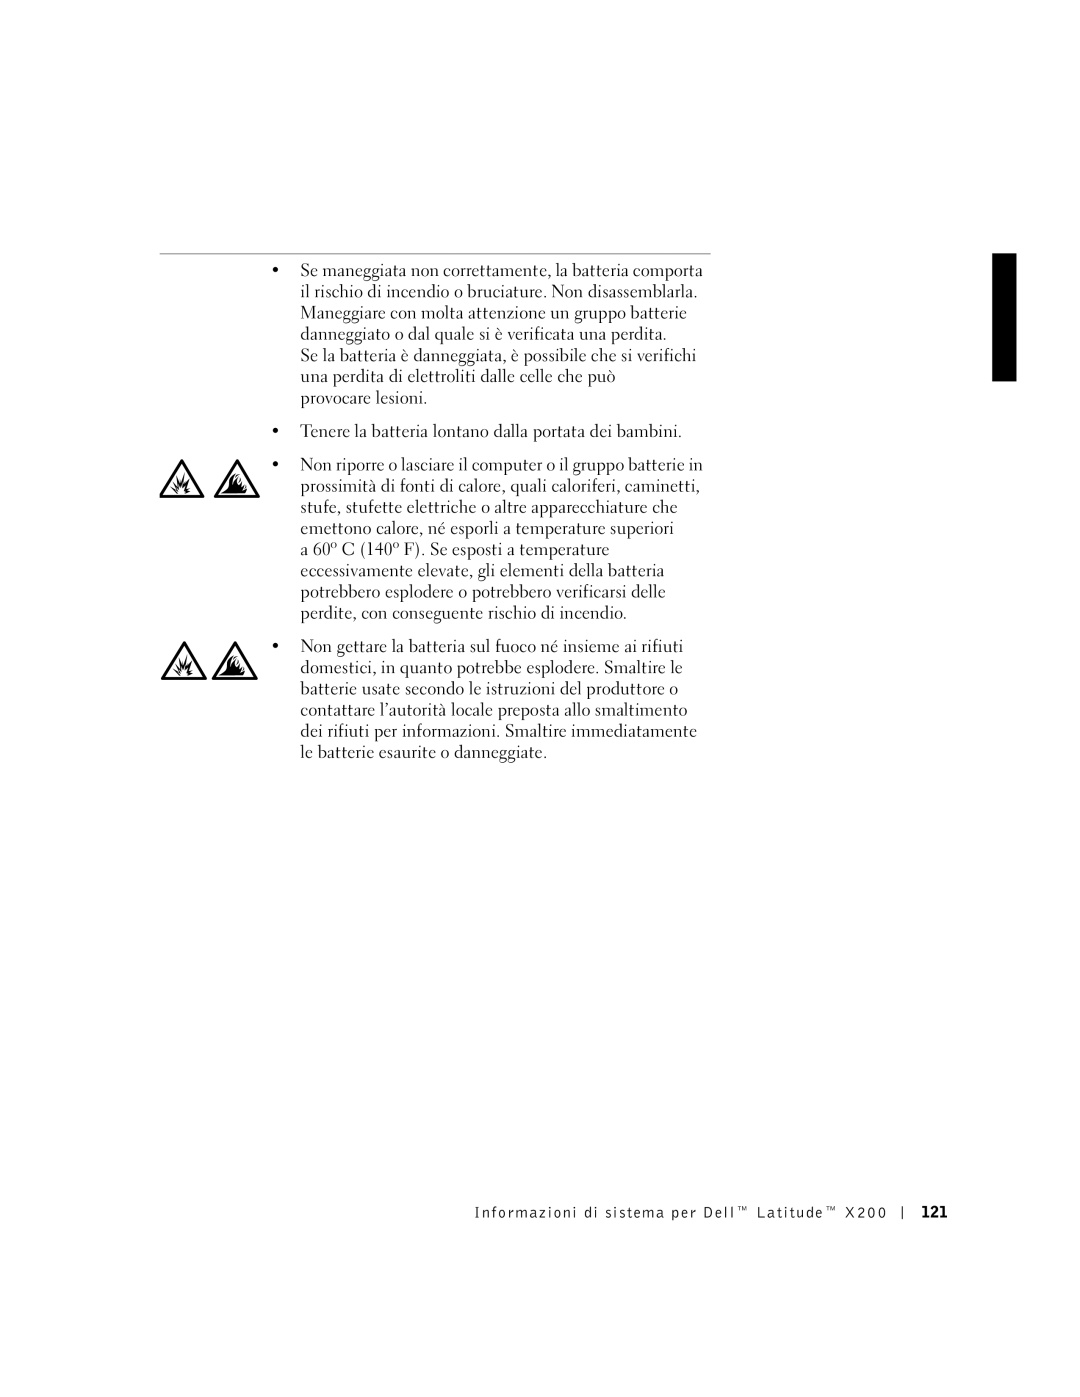 LeapFrog PP03S manual Informazioni di sistema per Dell Latitude 121 